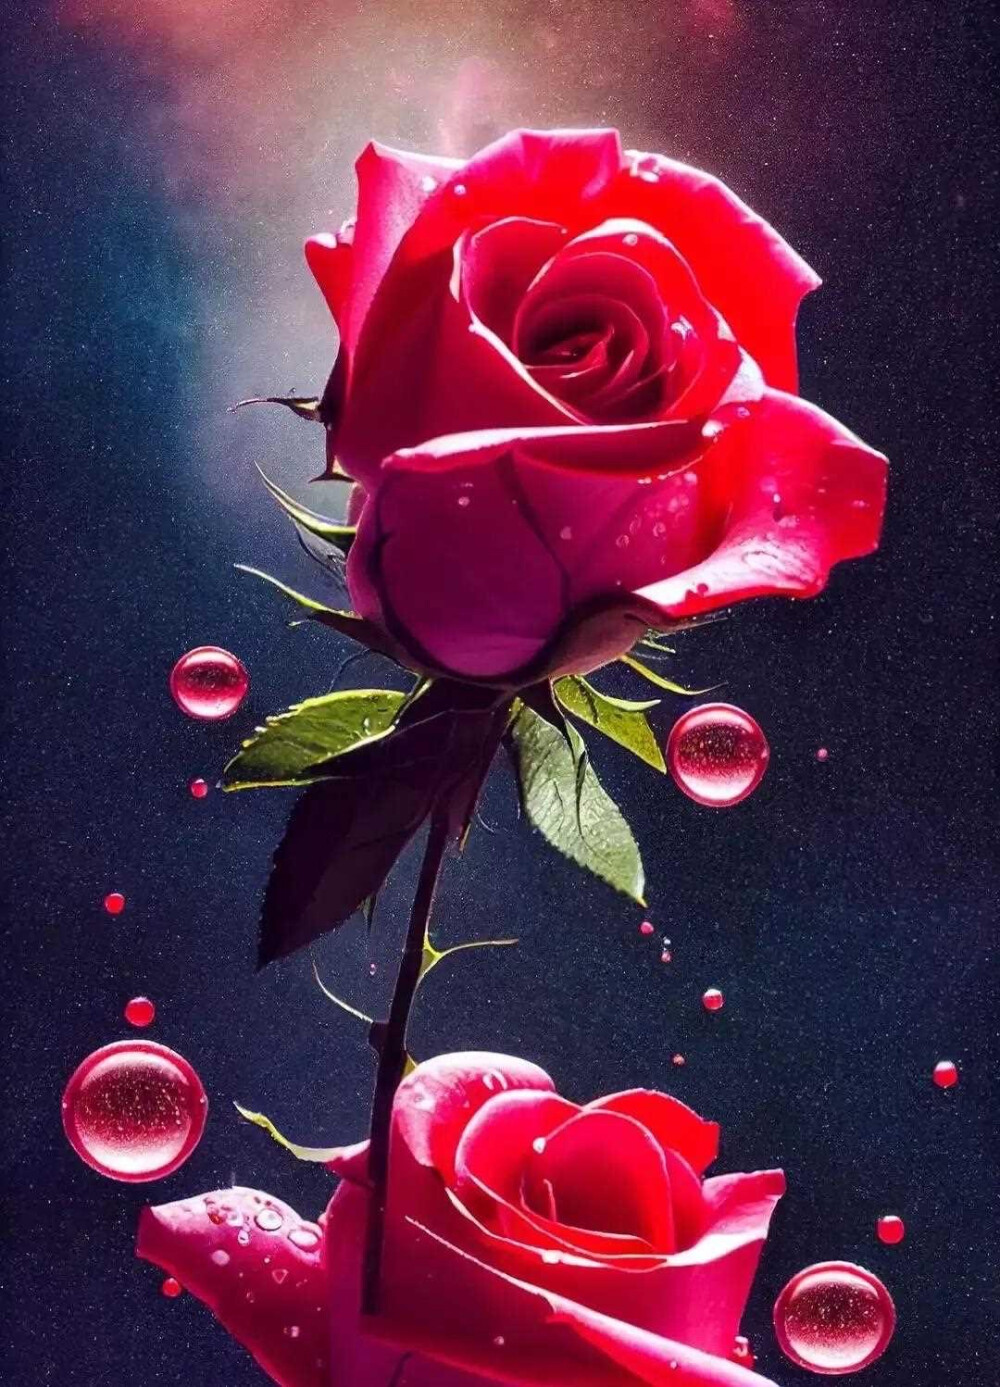 玫瑰花图片壁纸 竖屏图片